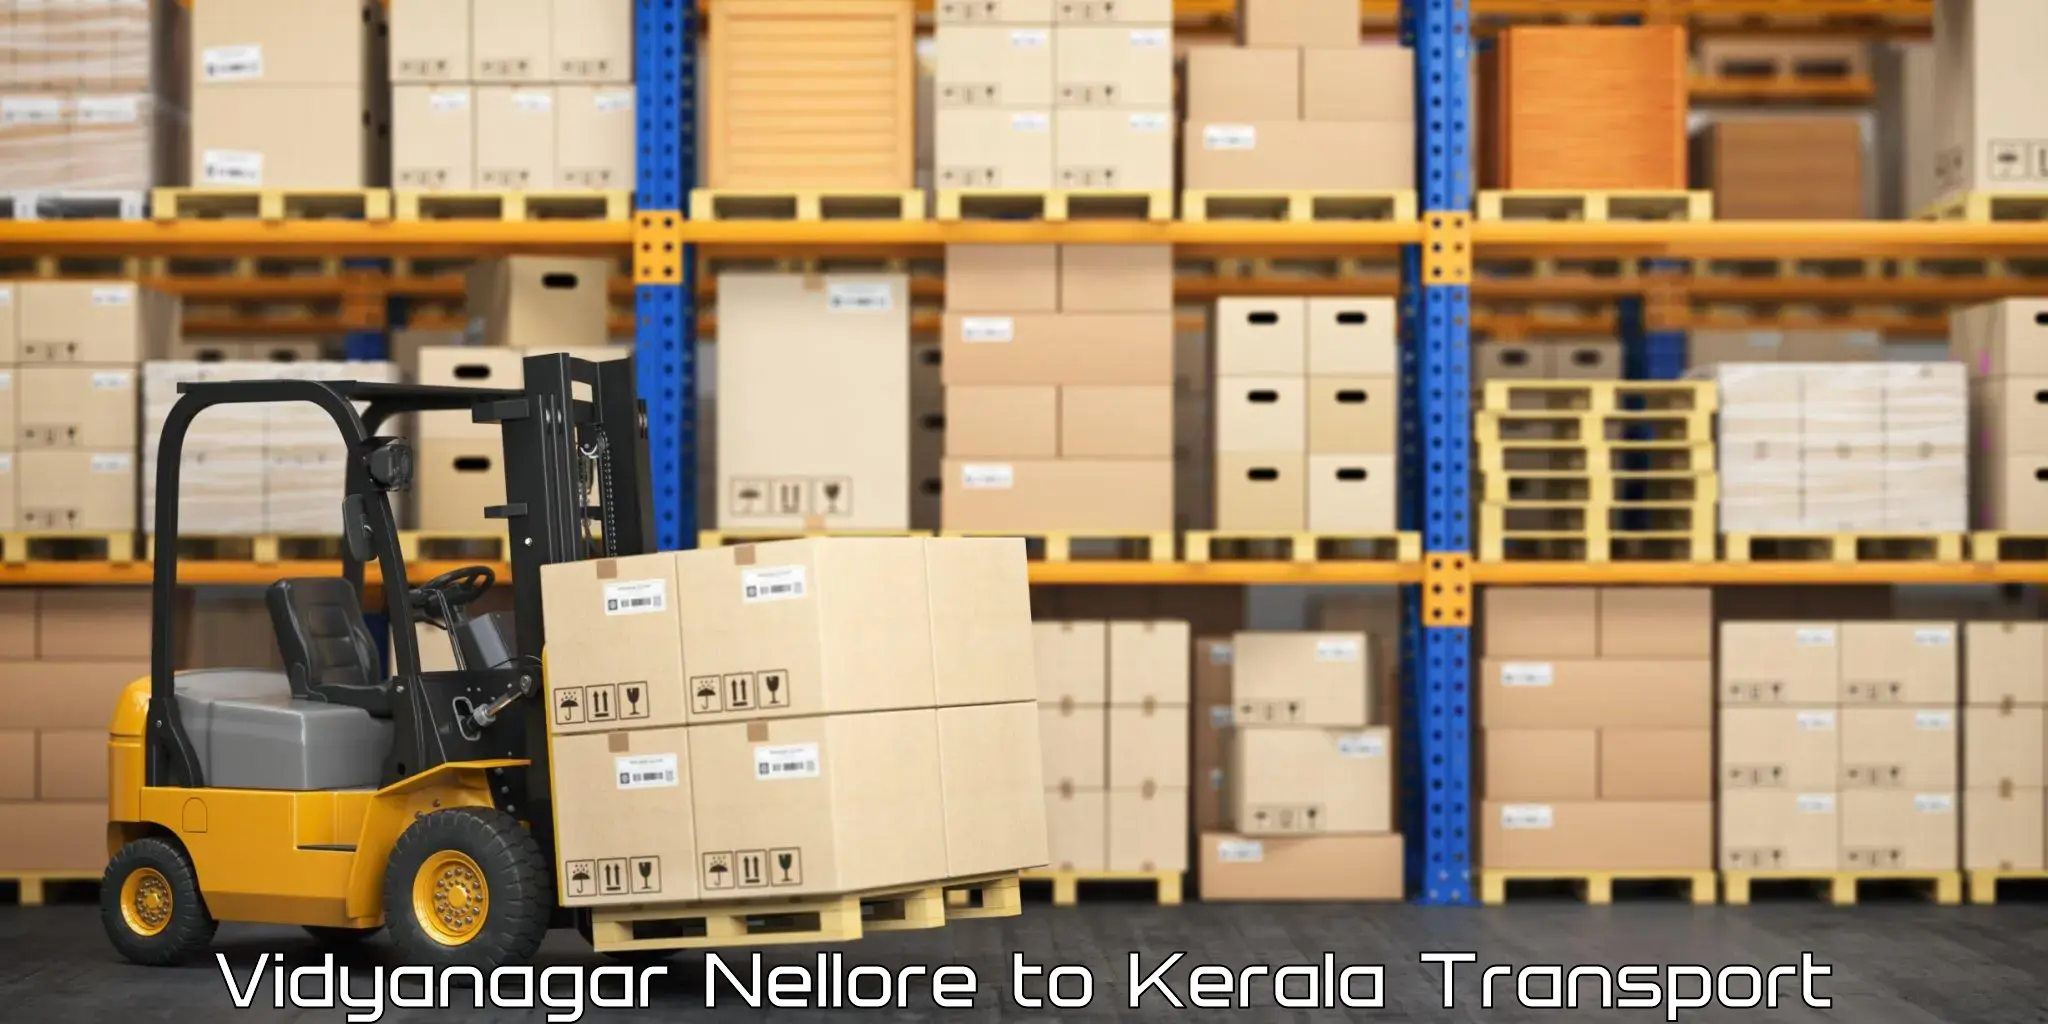 Air freight transport services Vidyanagar Nellore to Vaikom